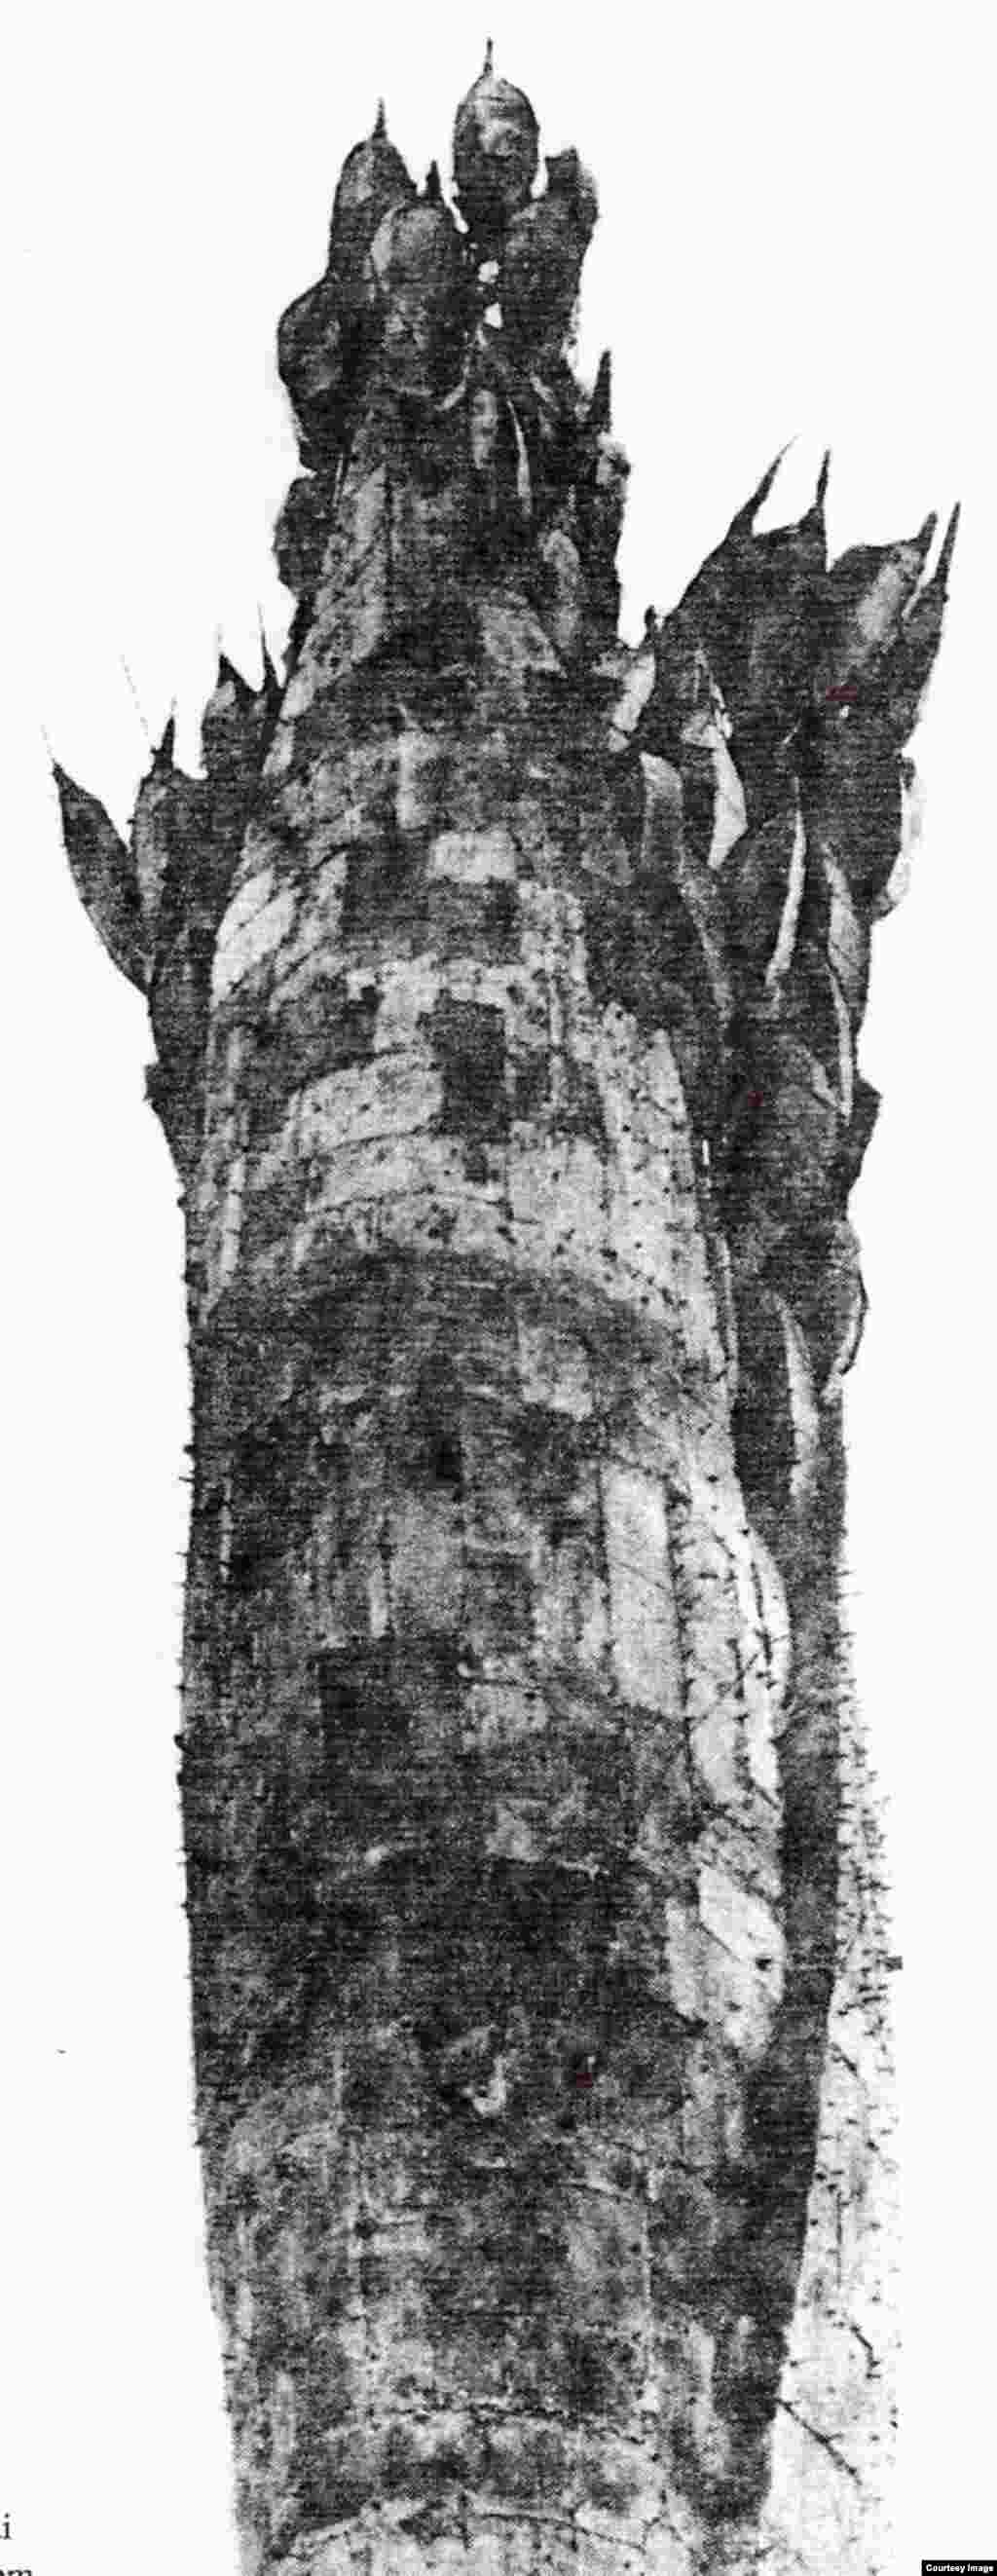  Bông Lúa Con Gái Những mảnh đồng ghép, cao 53 ft tượng ngoài trời Mai Chửng – 1970